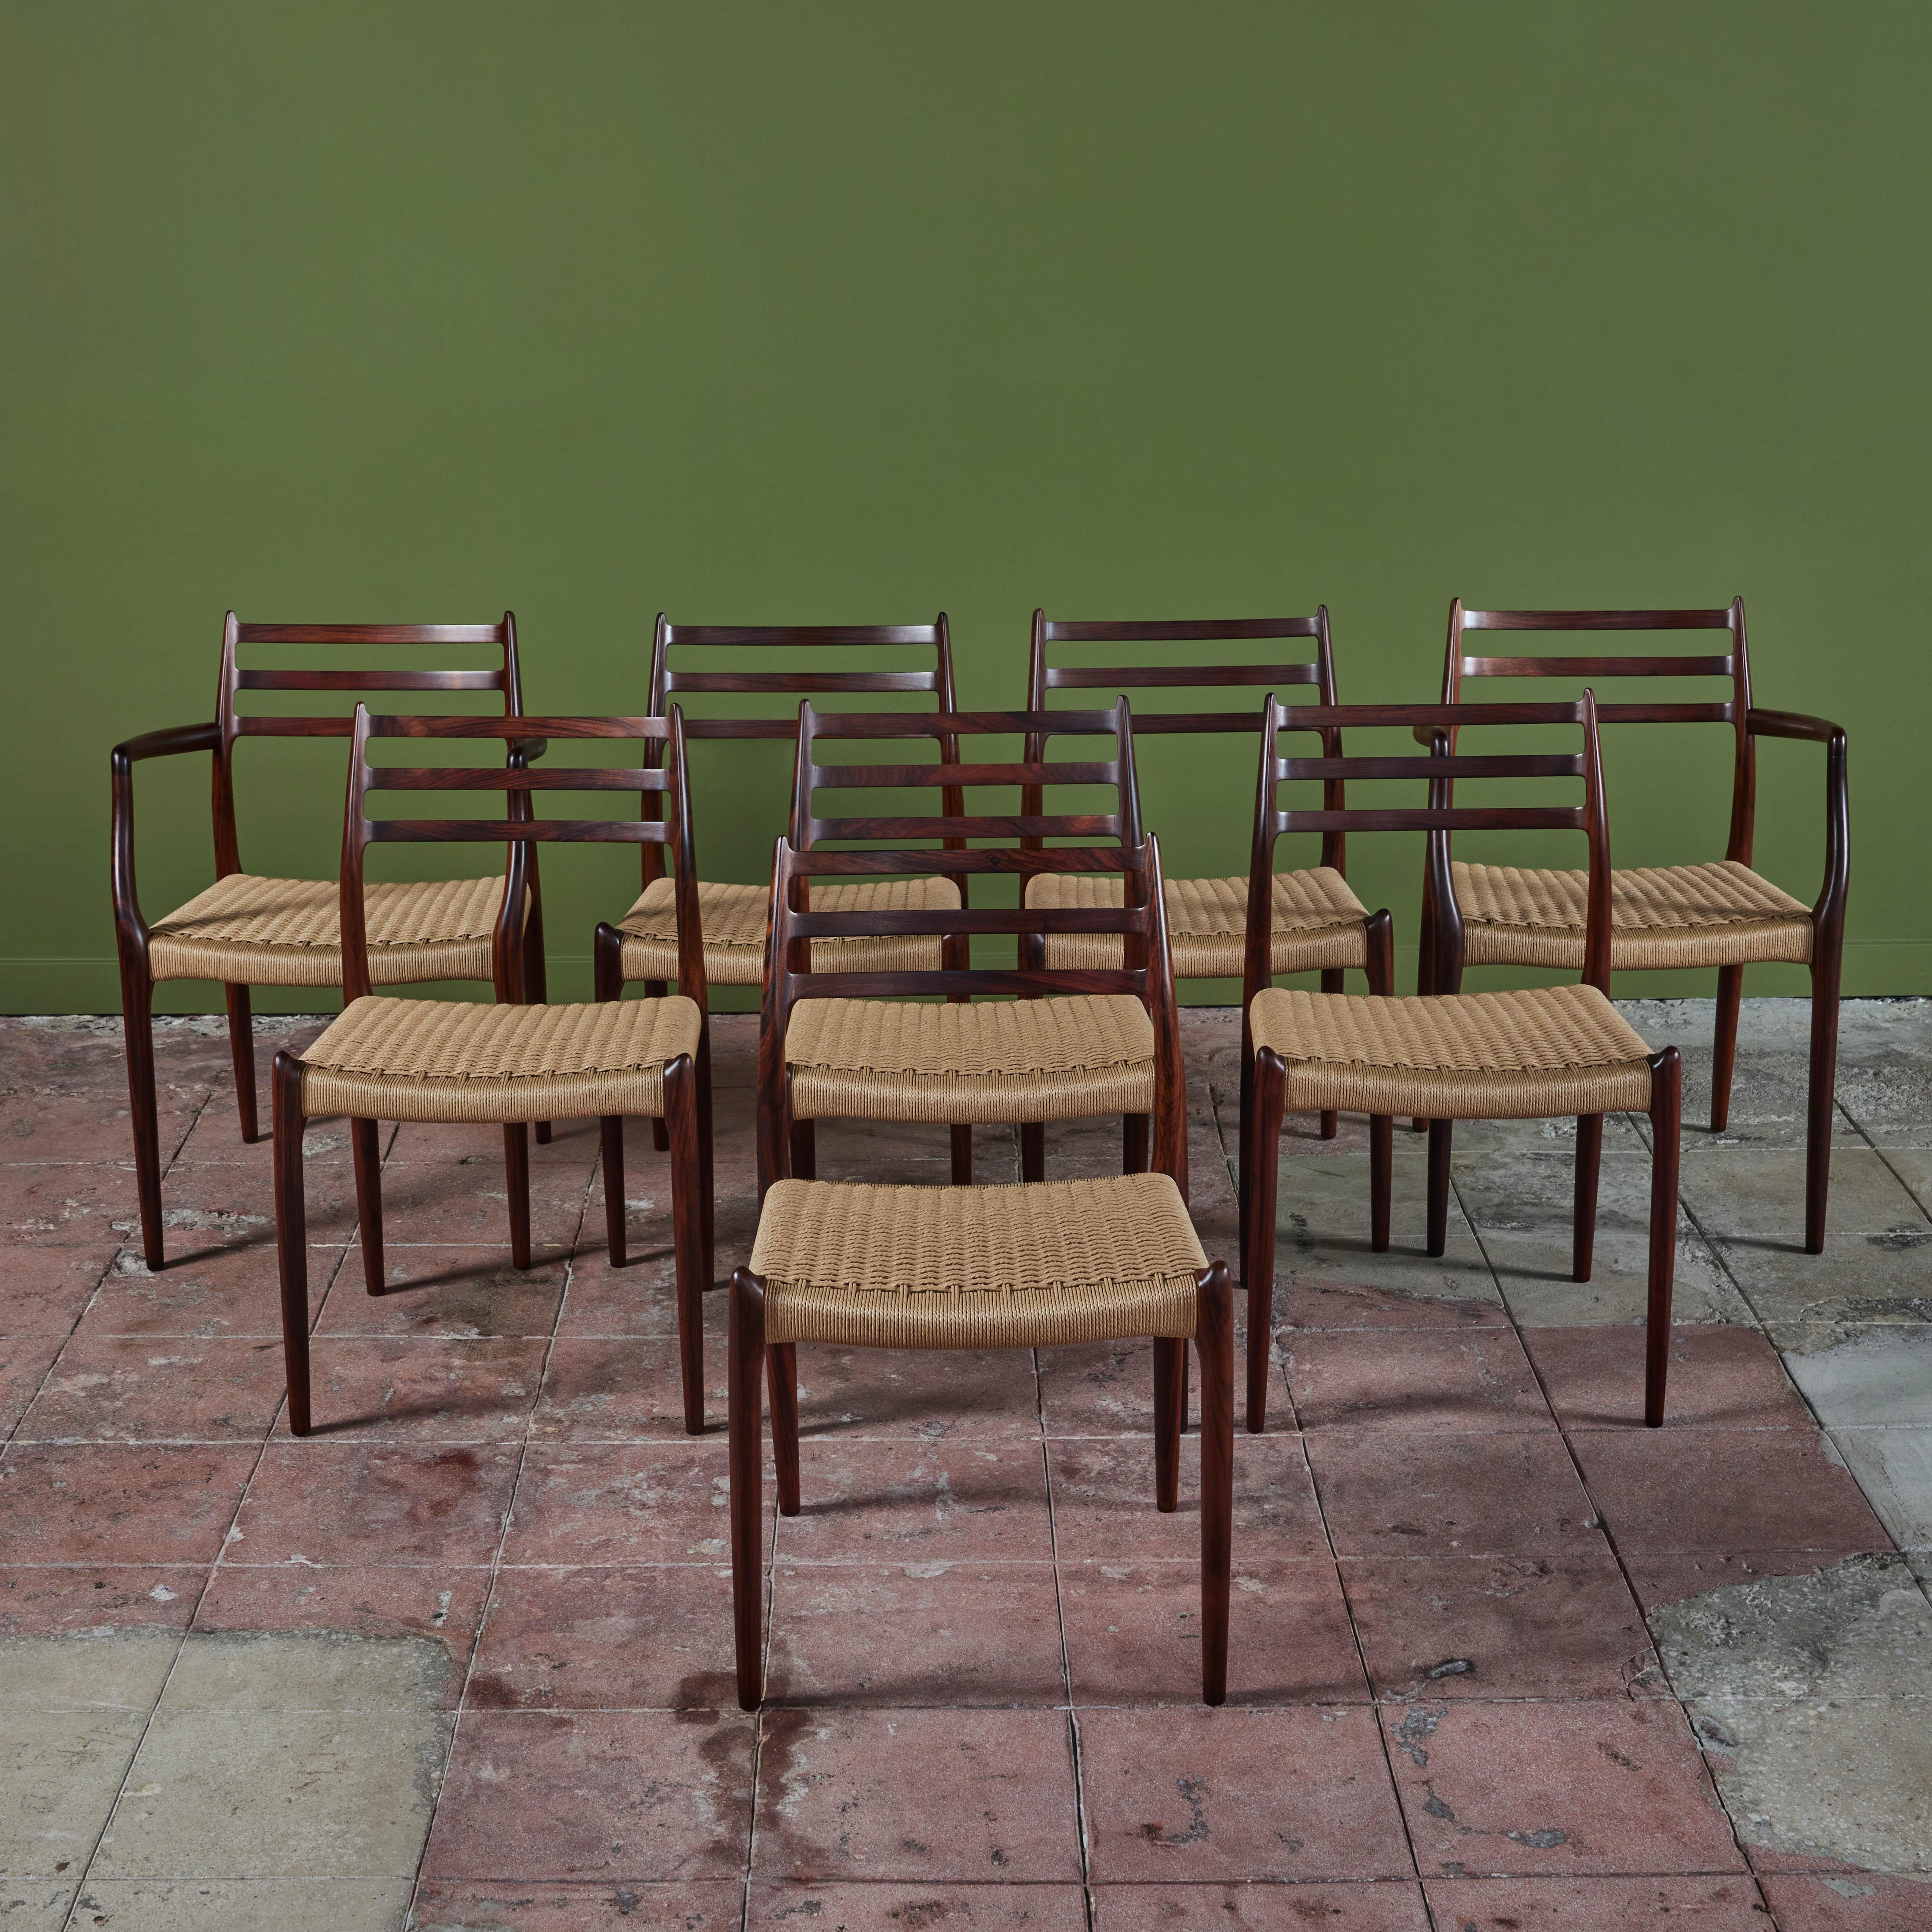 Acht Esszimmerstühle aus Palisanderholz, 1962 von Niels Otto Møller entworfen und von der dänischen JL Møllers Møbelfabrik hergestellt, mit Sitzen aus dänischer [Papier-]Schnur. Die Stühle haben eine geschwungene Rückenlehne mit drei horizontalen